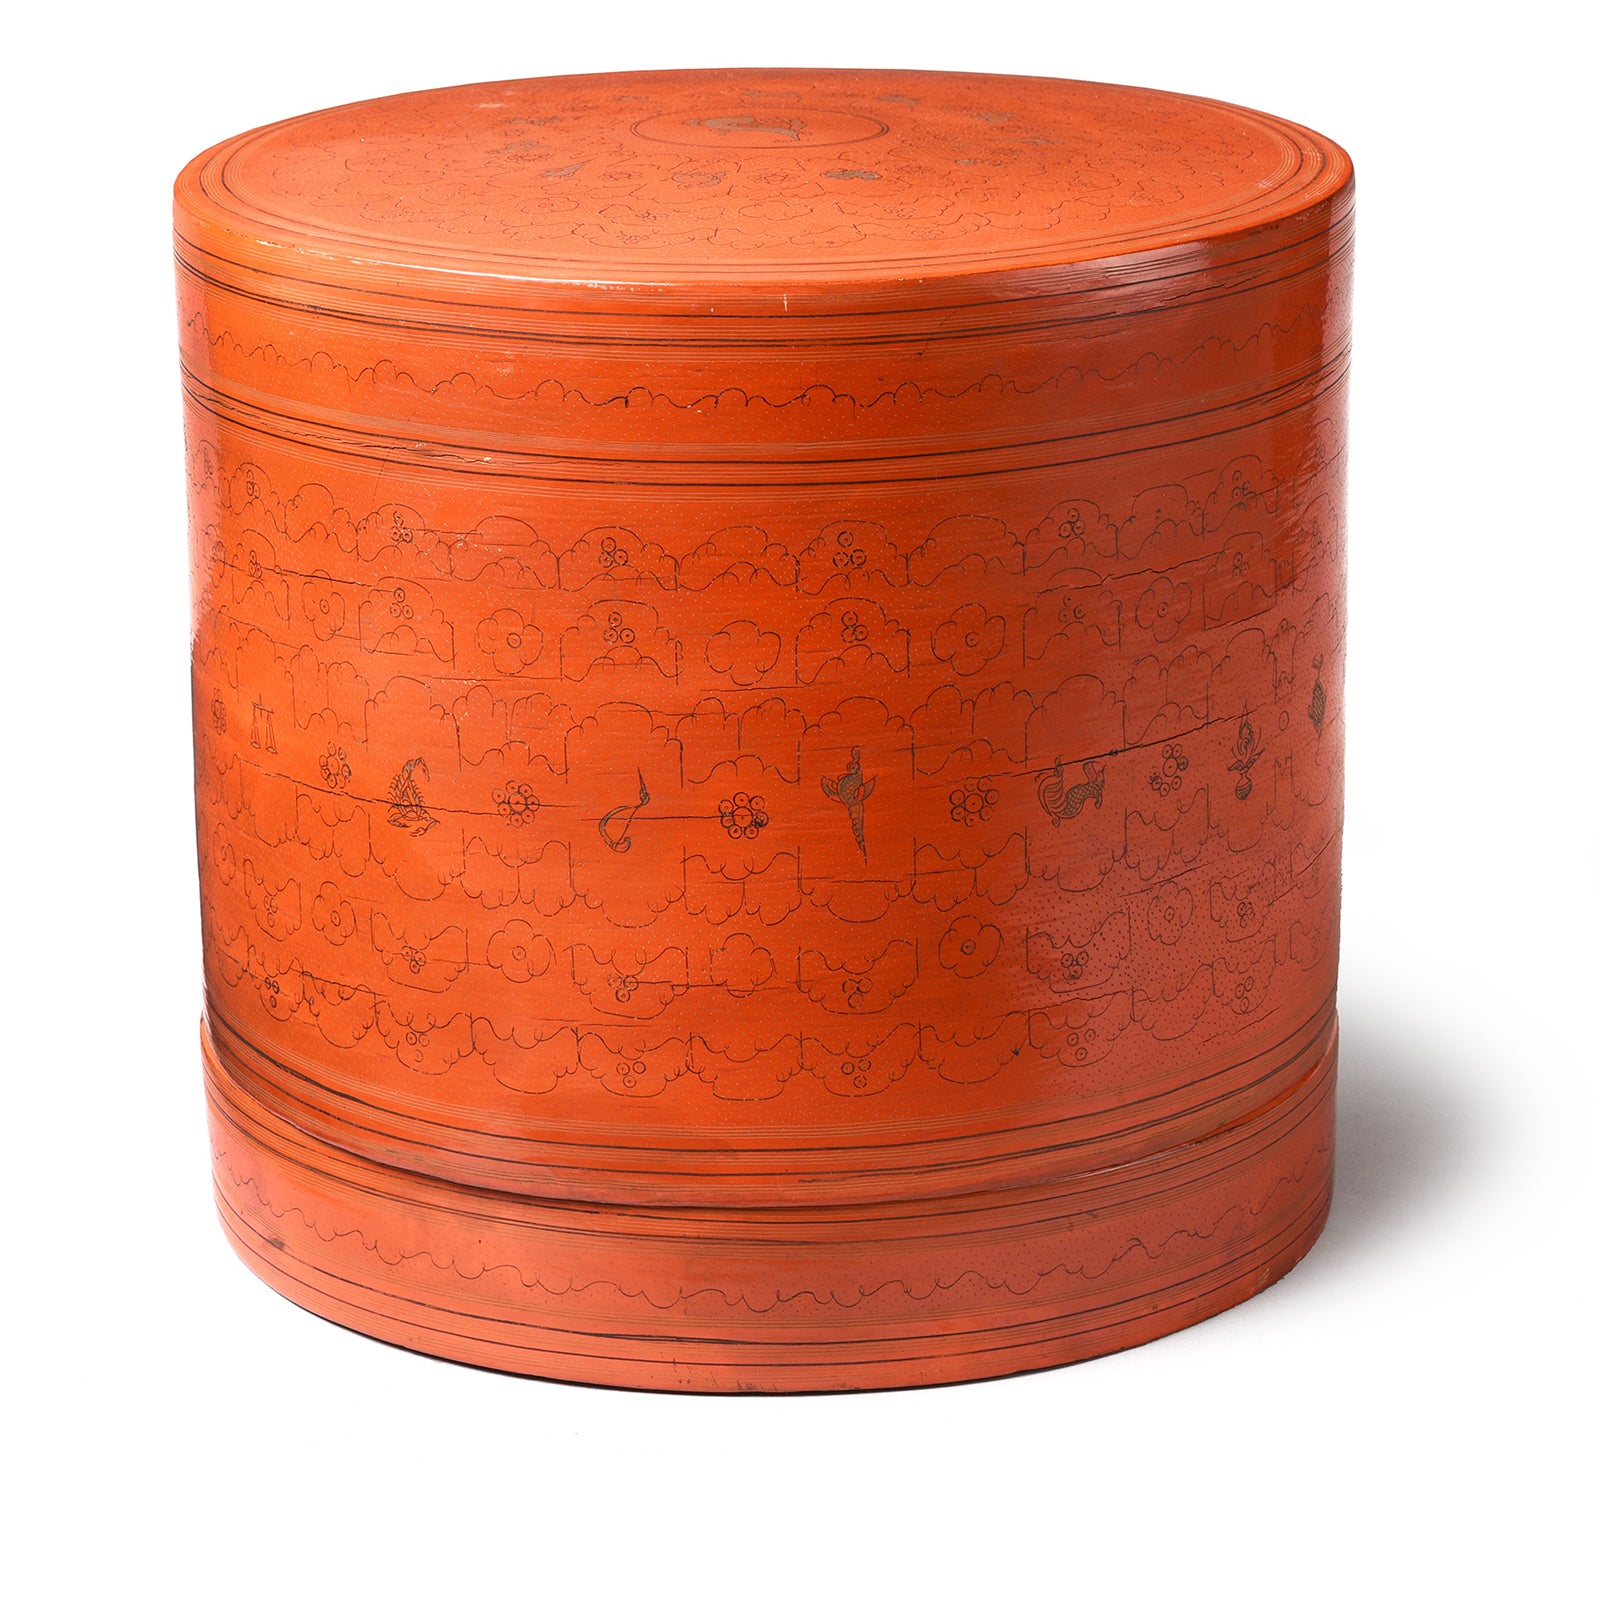 Large Burmese lacquerware betel box (kun it) orange lacquer tiffin box with kunan kanbyat etching| Indigo Antiques